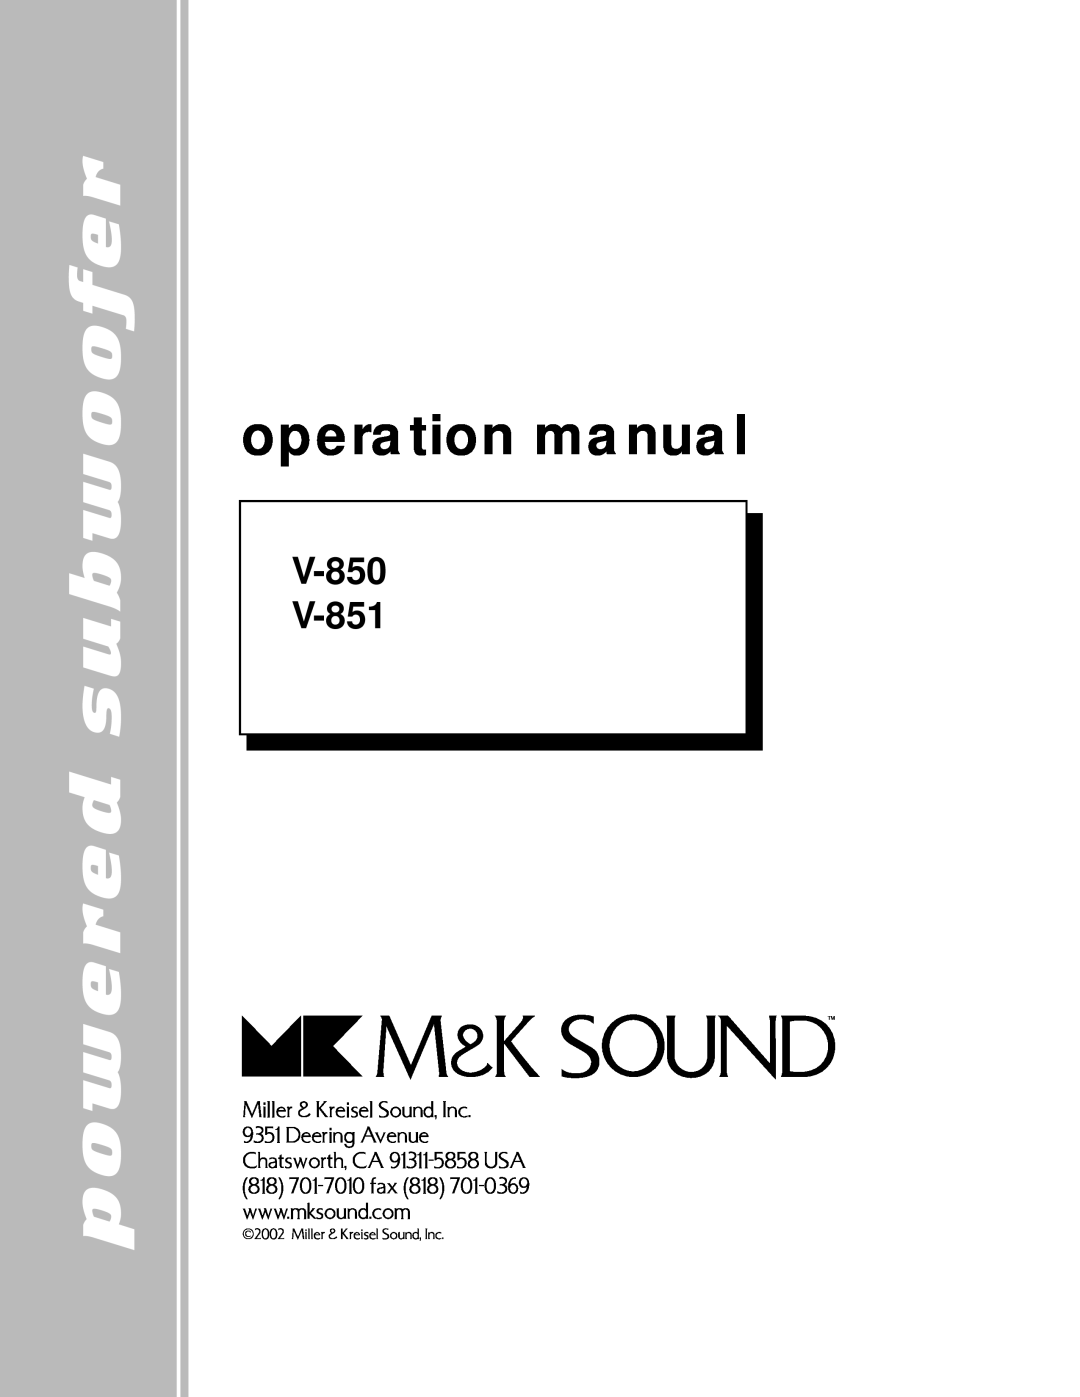 MK Sound V-851 operation manual powered subwoofer, V-850, Miller & Kreisel Sound, Inc 9351 Deering Avenue 